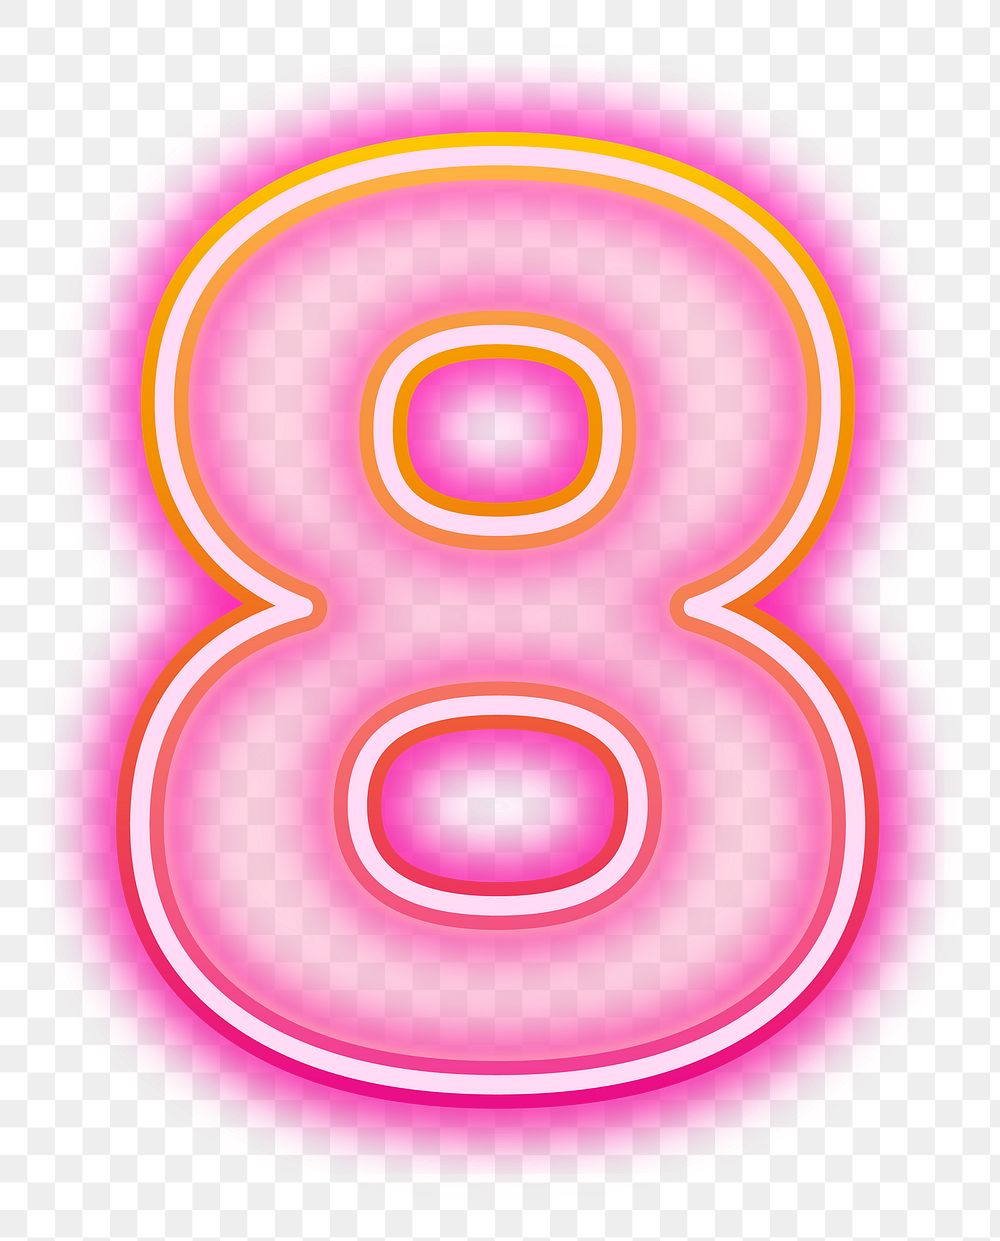 PNG number 8 pink neon design, transparent background